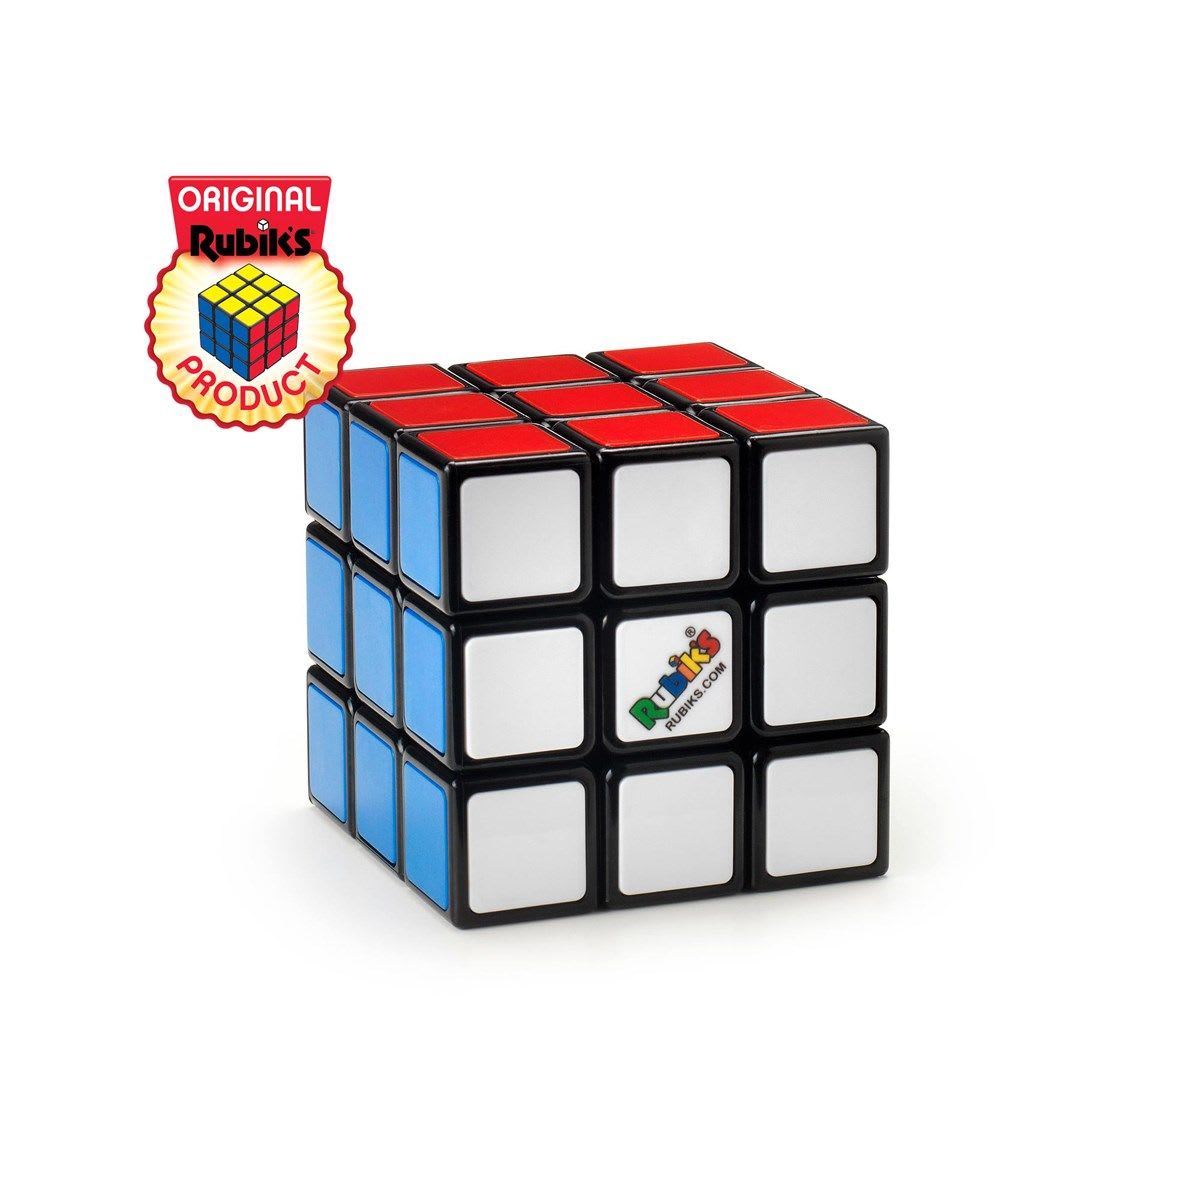 Rubik's 3x3 rubikinkuutio pulmapeli  verkkokauppa